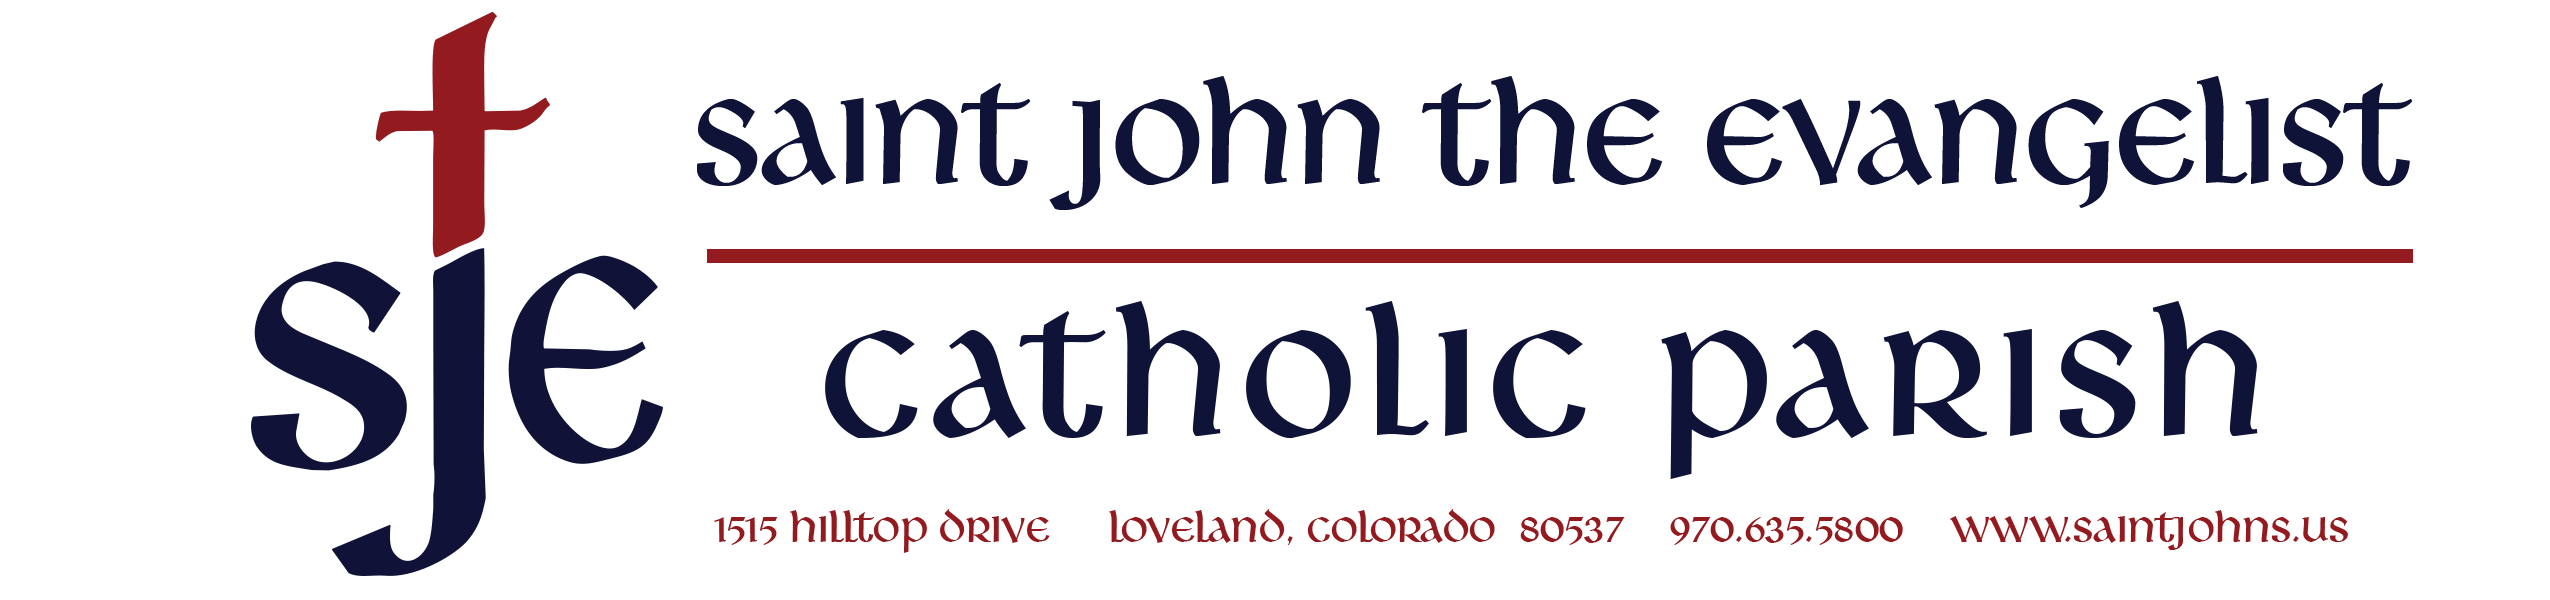 St. John the Evangelist logo